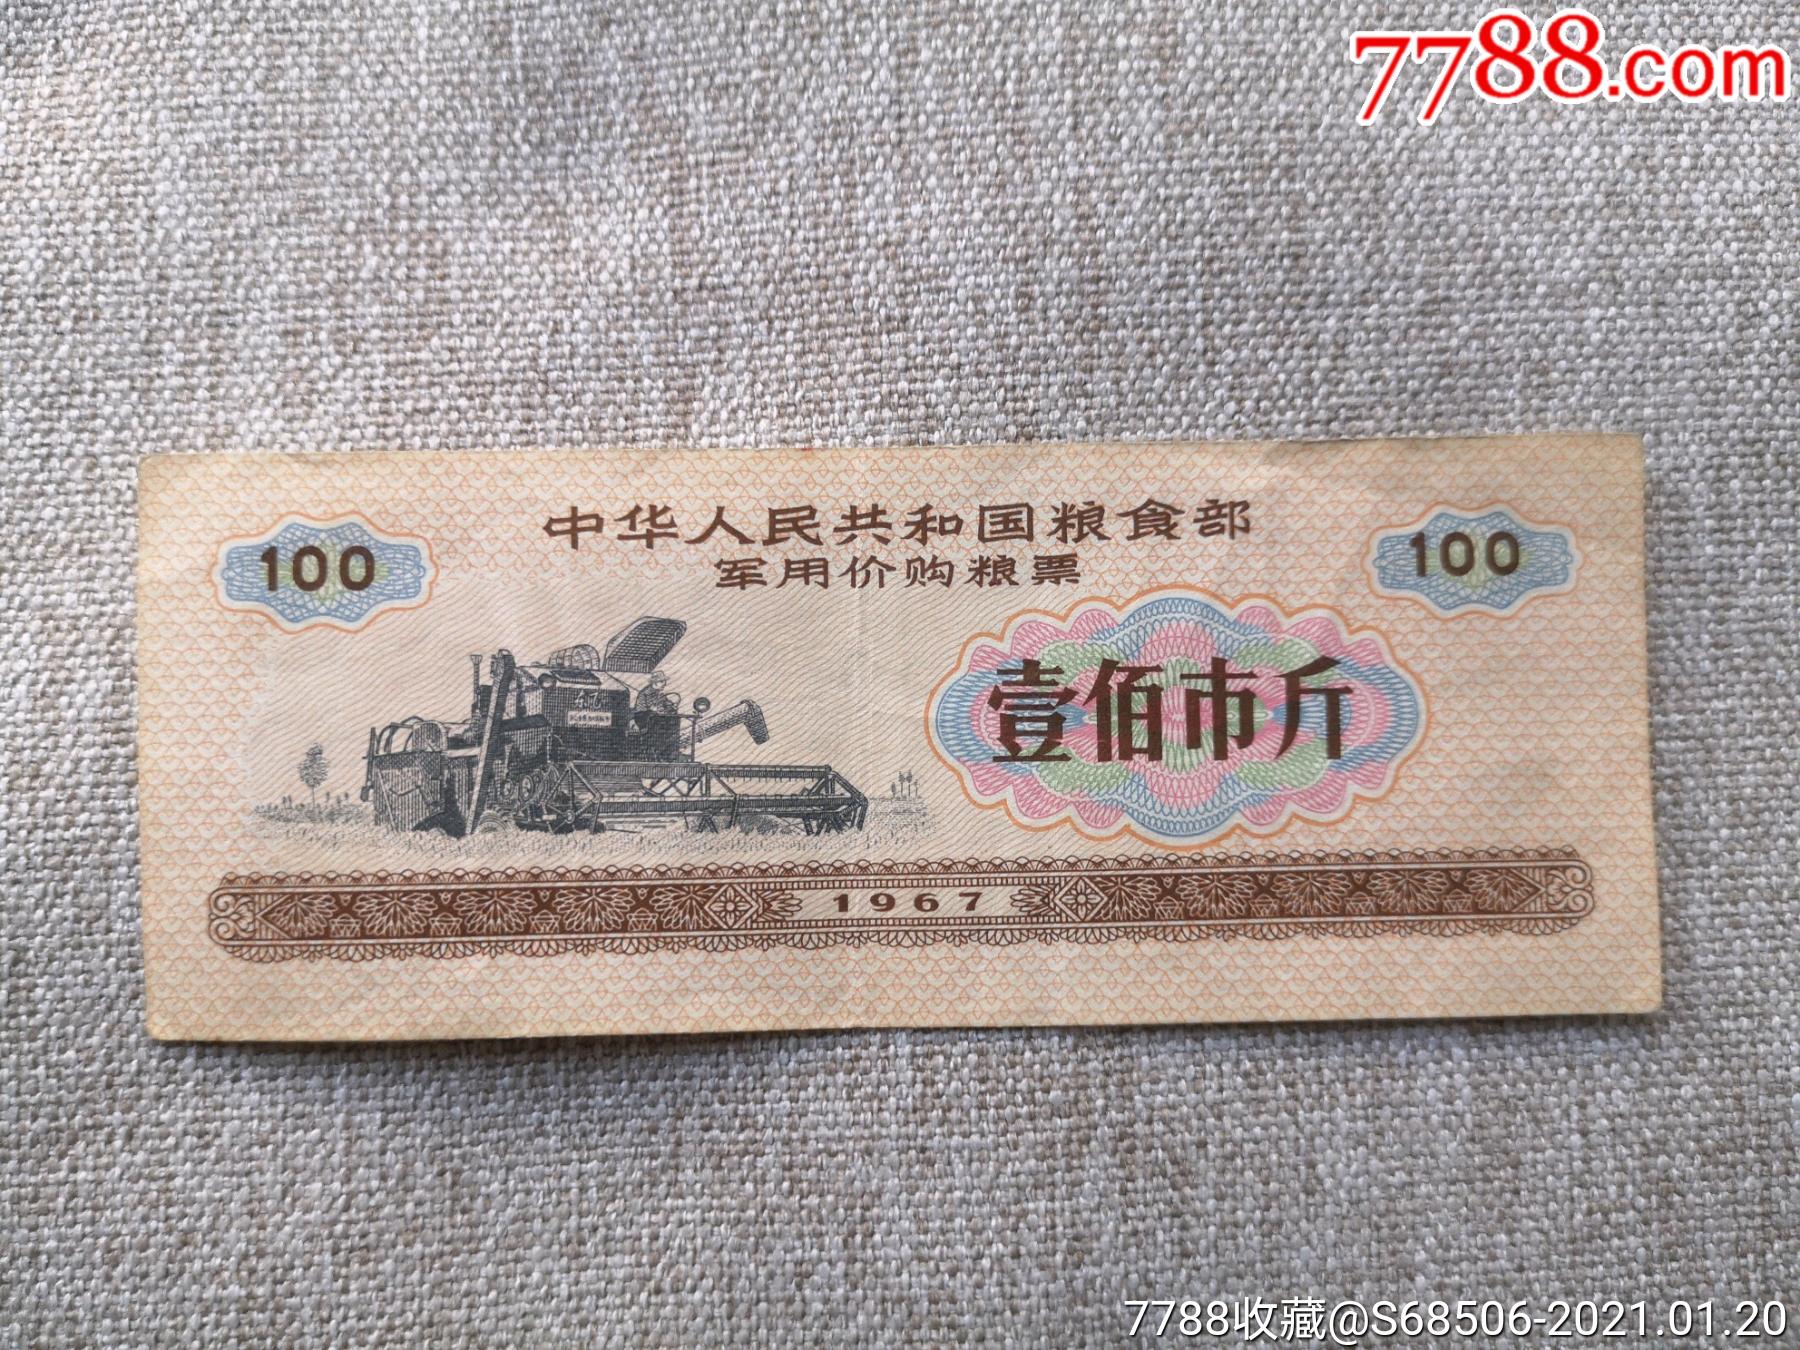 1967年语录,*用价购粮票,壹佰市斤